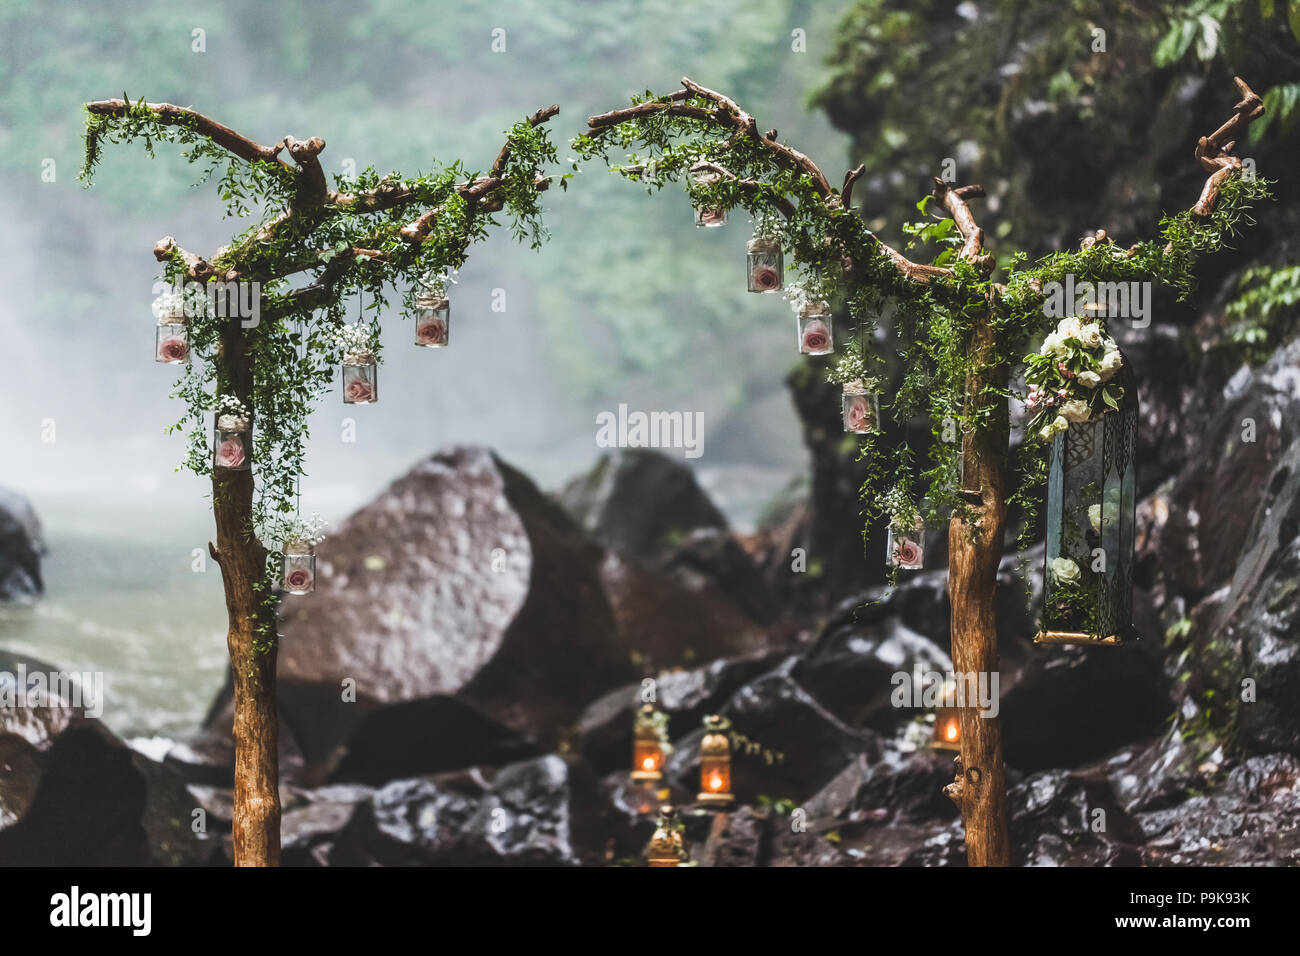 Tropical cerimonia di nozze con cascata vista nella giungla canyon. Decorate con verde edera, antiche filiali e lampade pensili Foto Stock